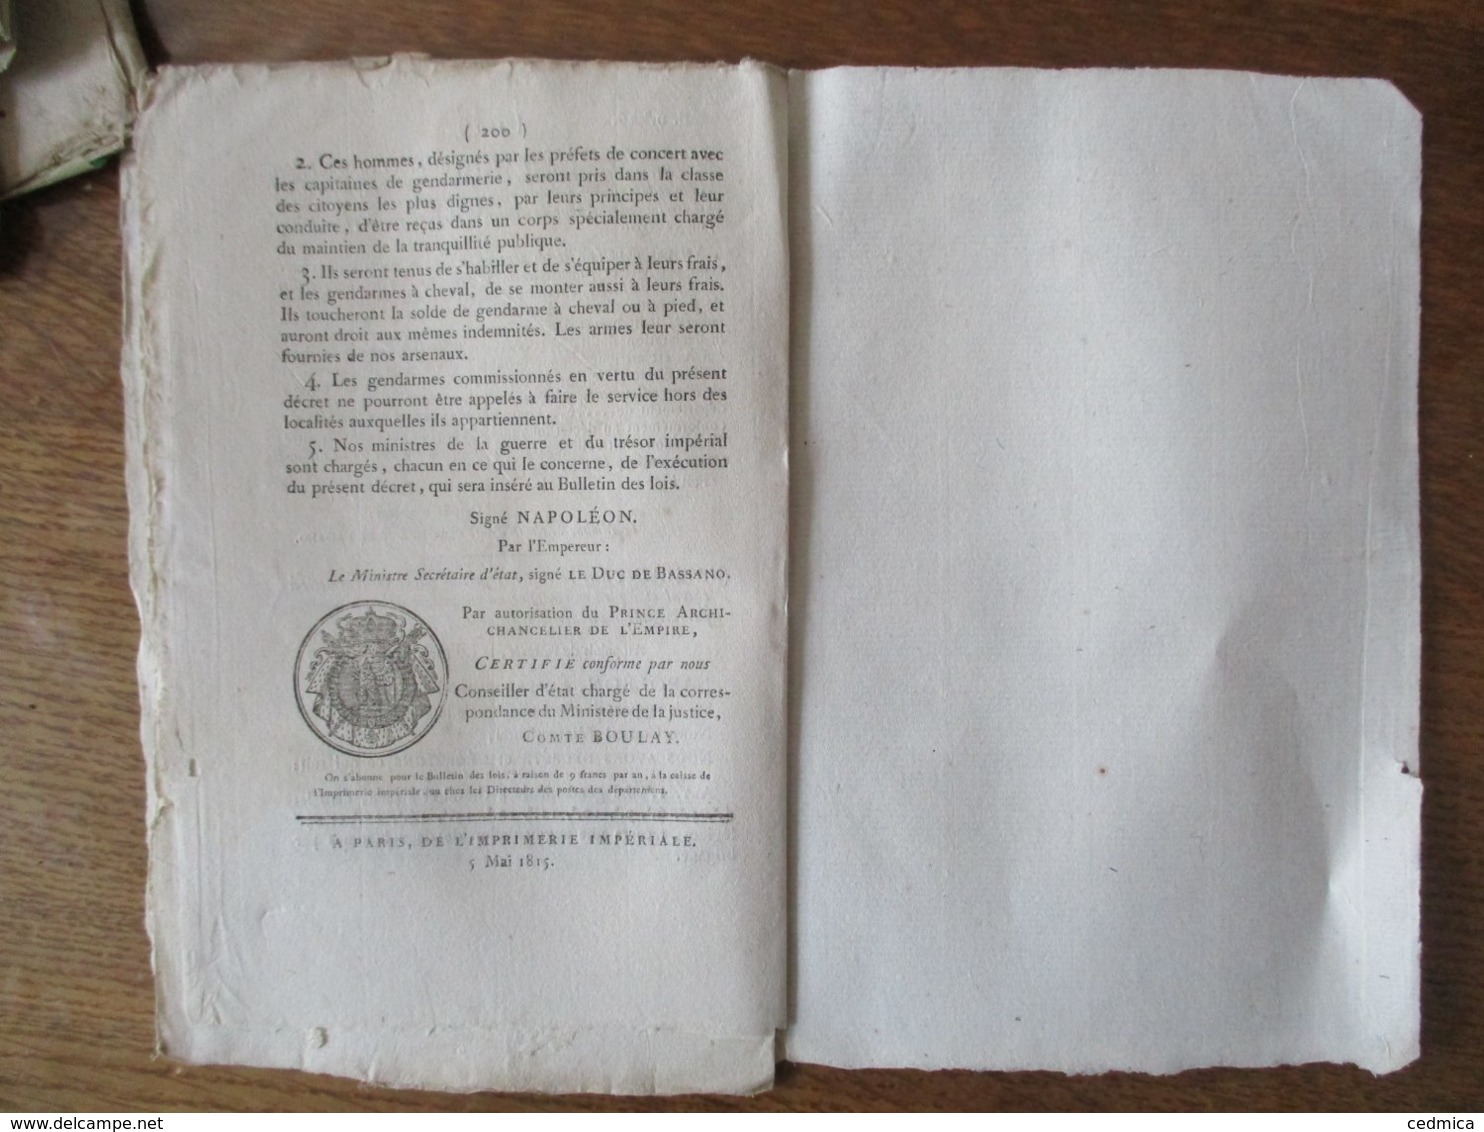 BULLETIN DES LOIS N°26 DU 3 MAI 1815 AU PALAIS DE L'ELYSEE NAPOLEON DECRET IMPERIAL MEMBRES DE LA LEGION D'HONNEUR ADMIS - Gesetze & Erlasse